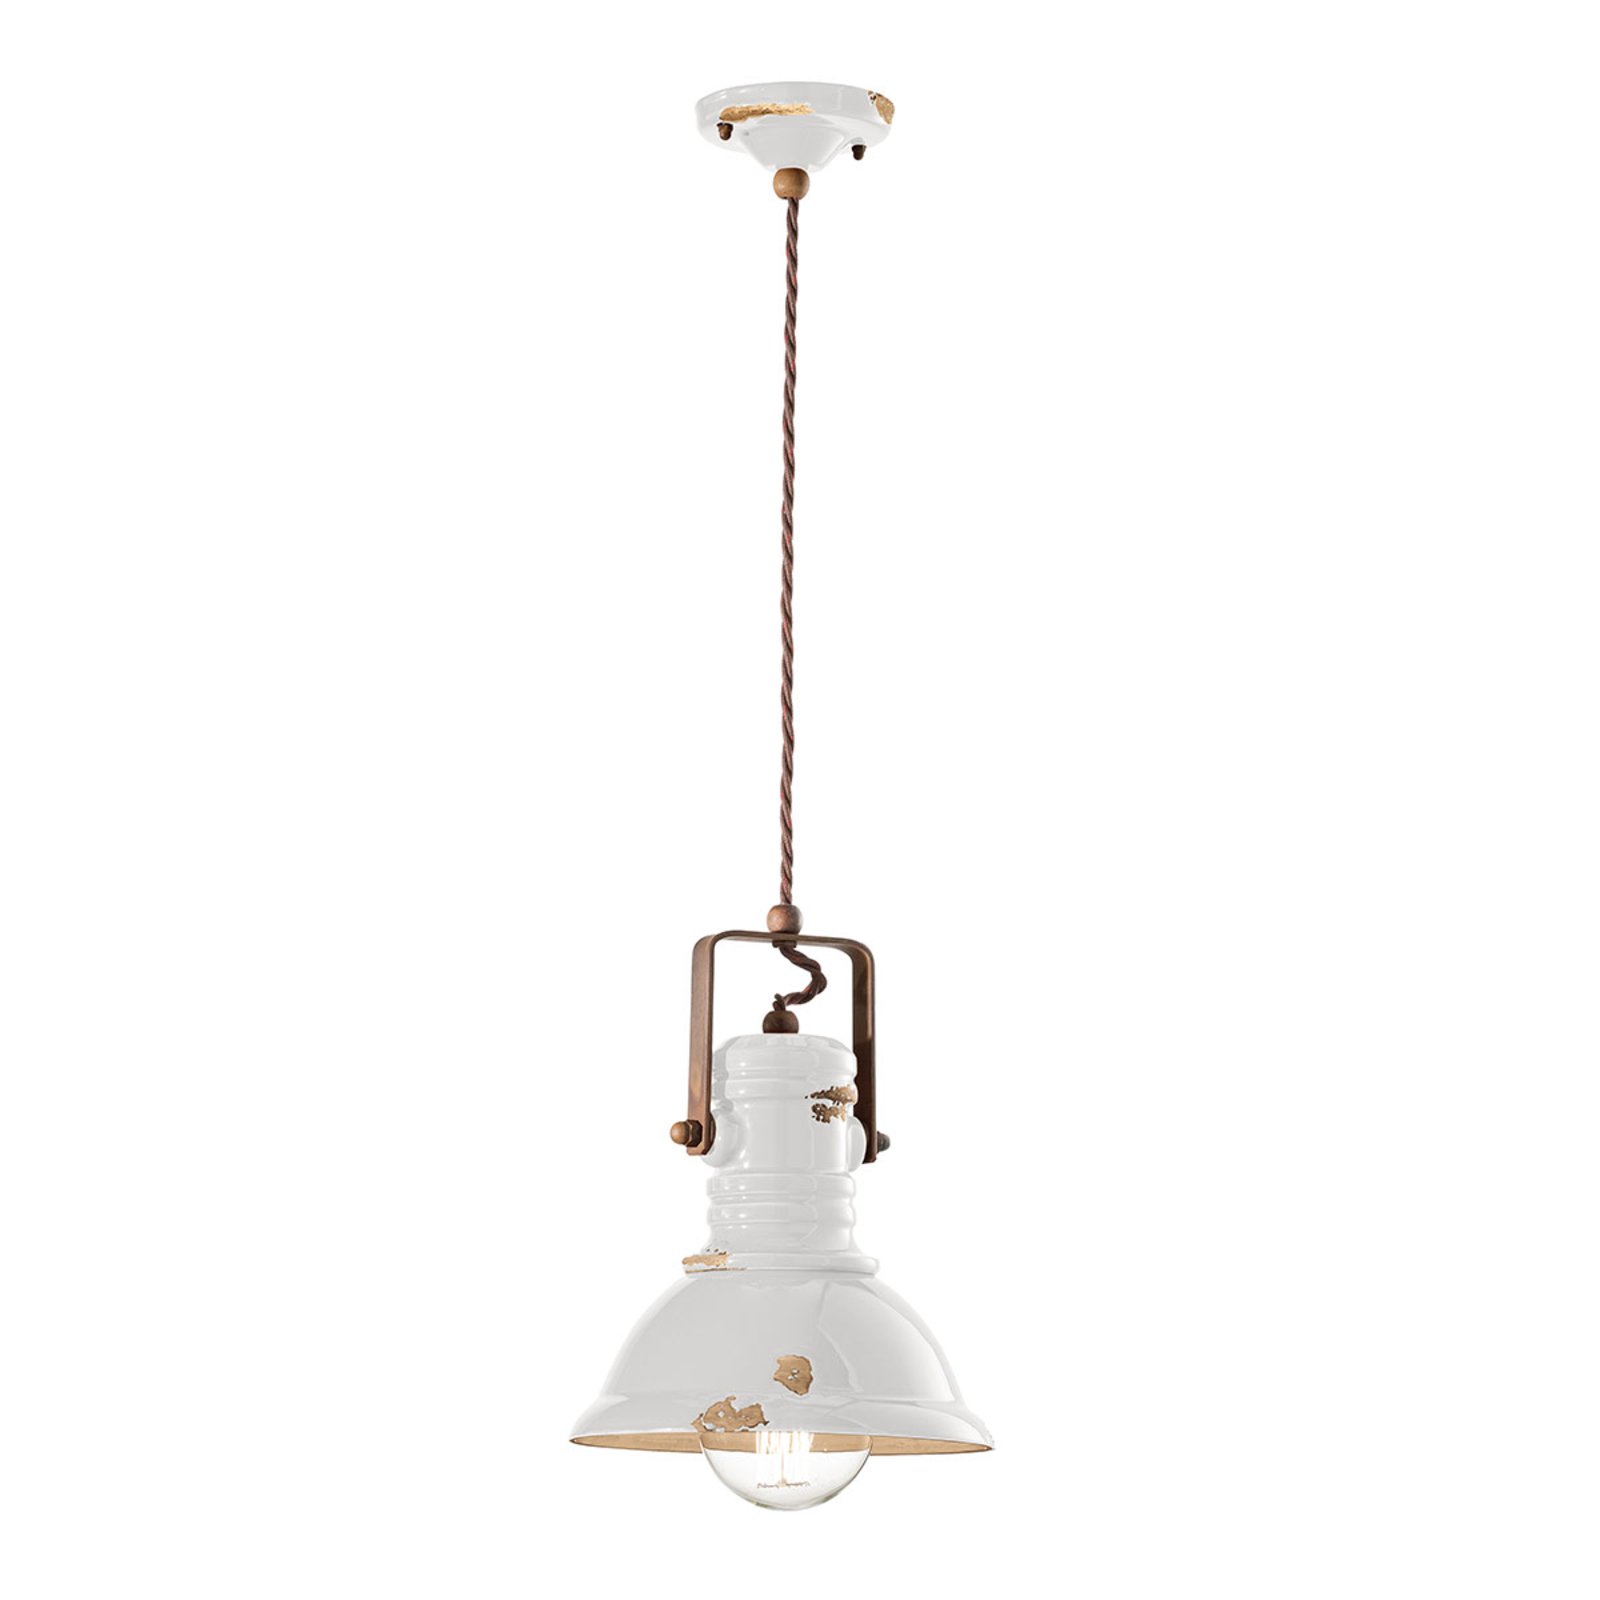 Lampa wisząca C1691 w białym, industrialnym stylu